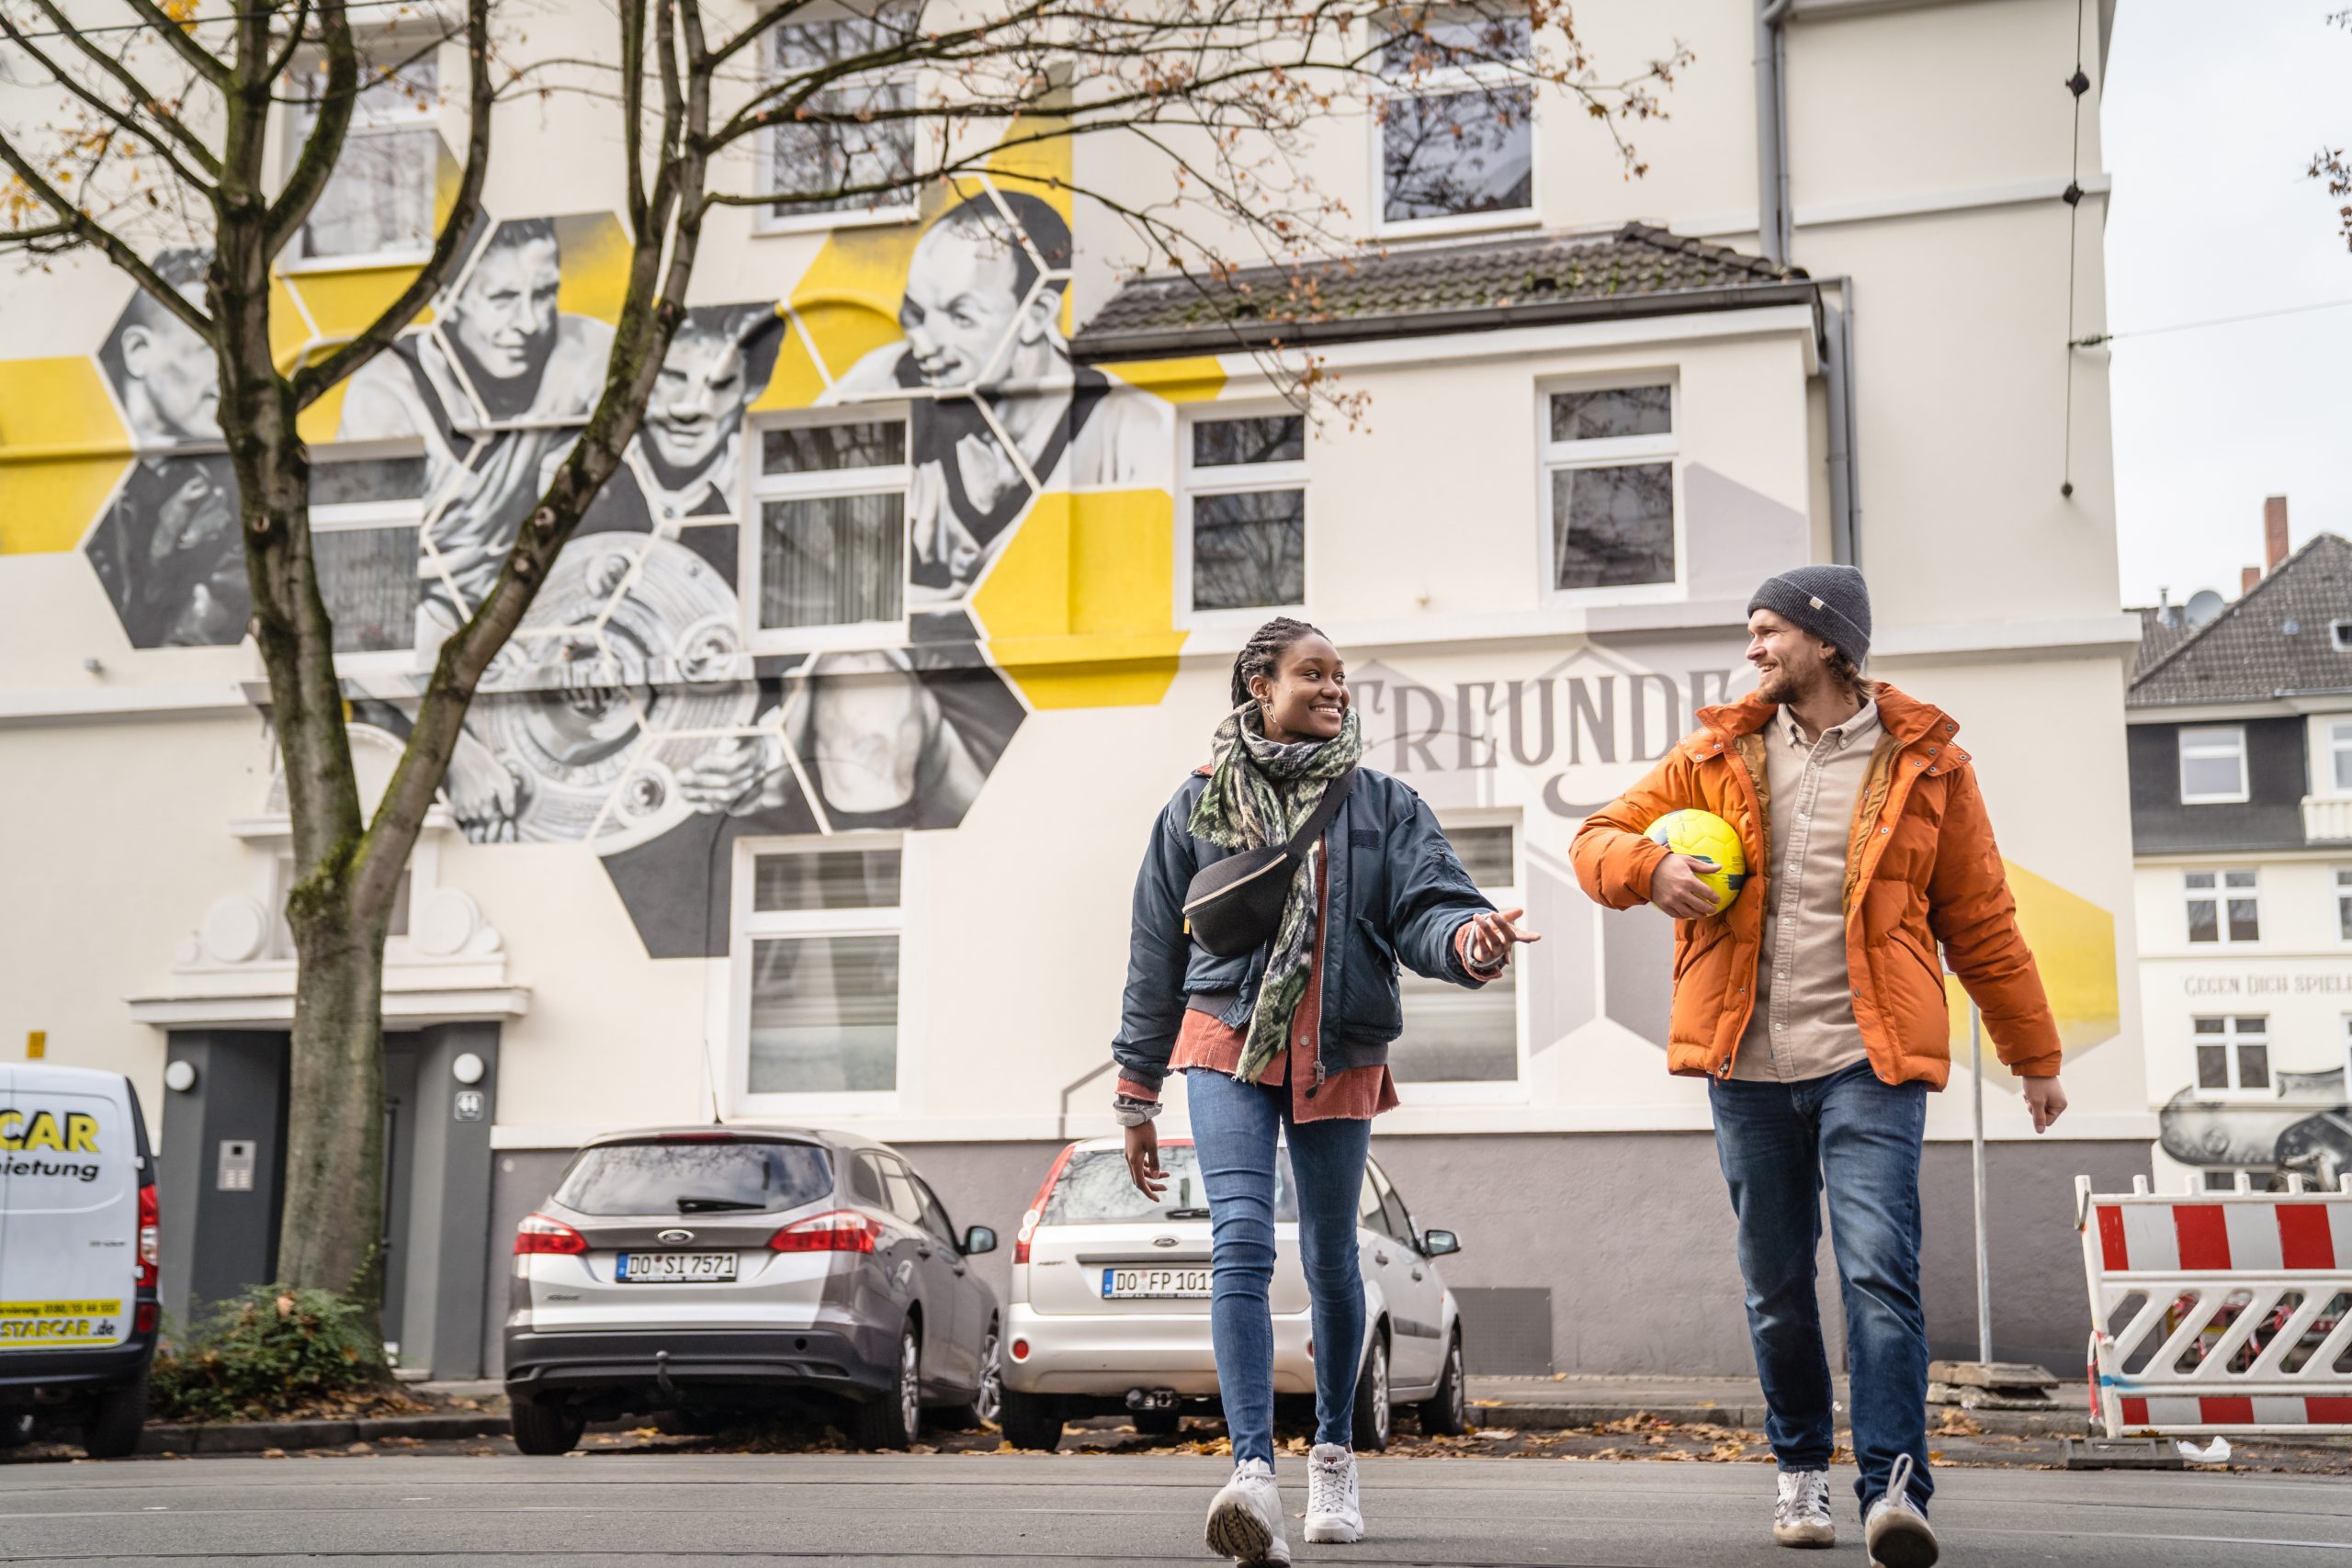 Zwei Personen vor einem Fußball Mural in Dortmund